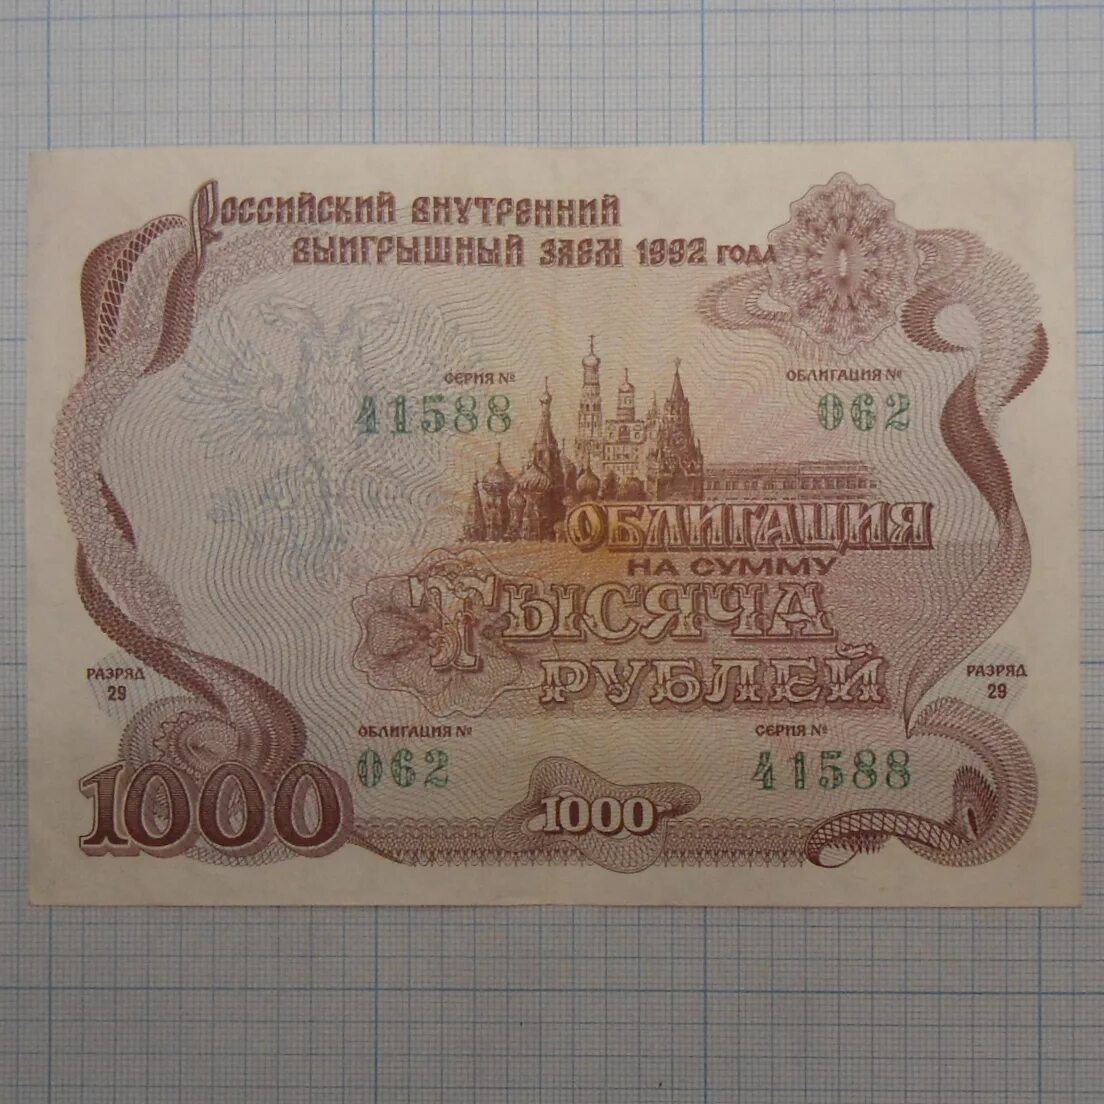 3 рубля займы. Облигация 10000. Облигация 1000 рублей. Ценная бумага 1000 рублей. Обьигация на 1000₽ 1992 года.